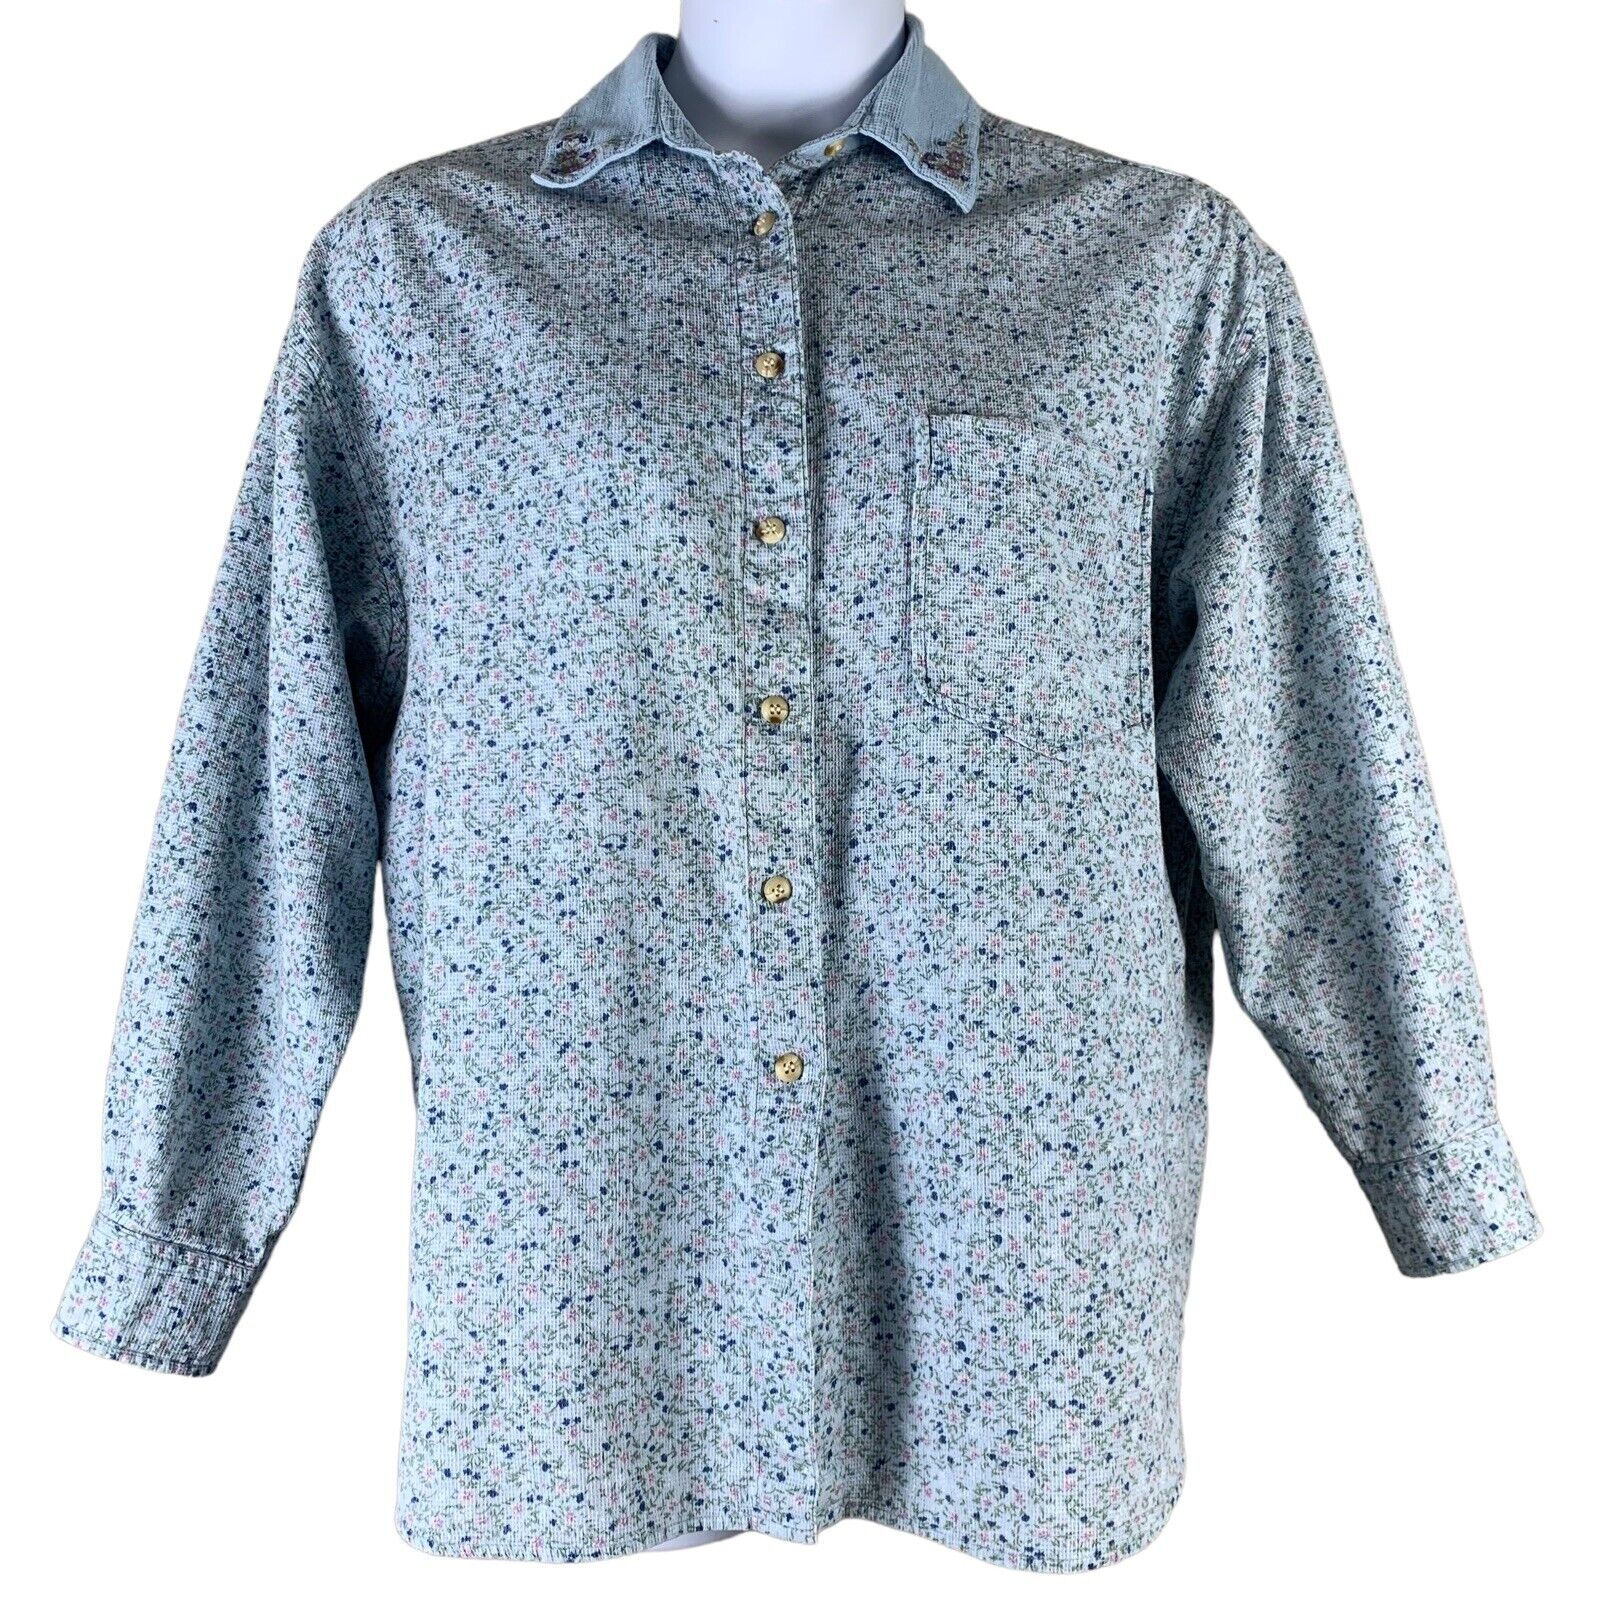 Krazy Kat 22/24 Shirt Knit Floral Button Up Top E… - image 1